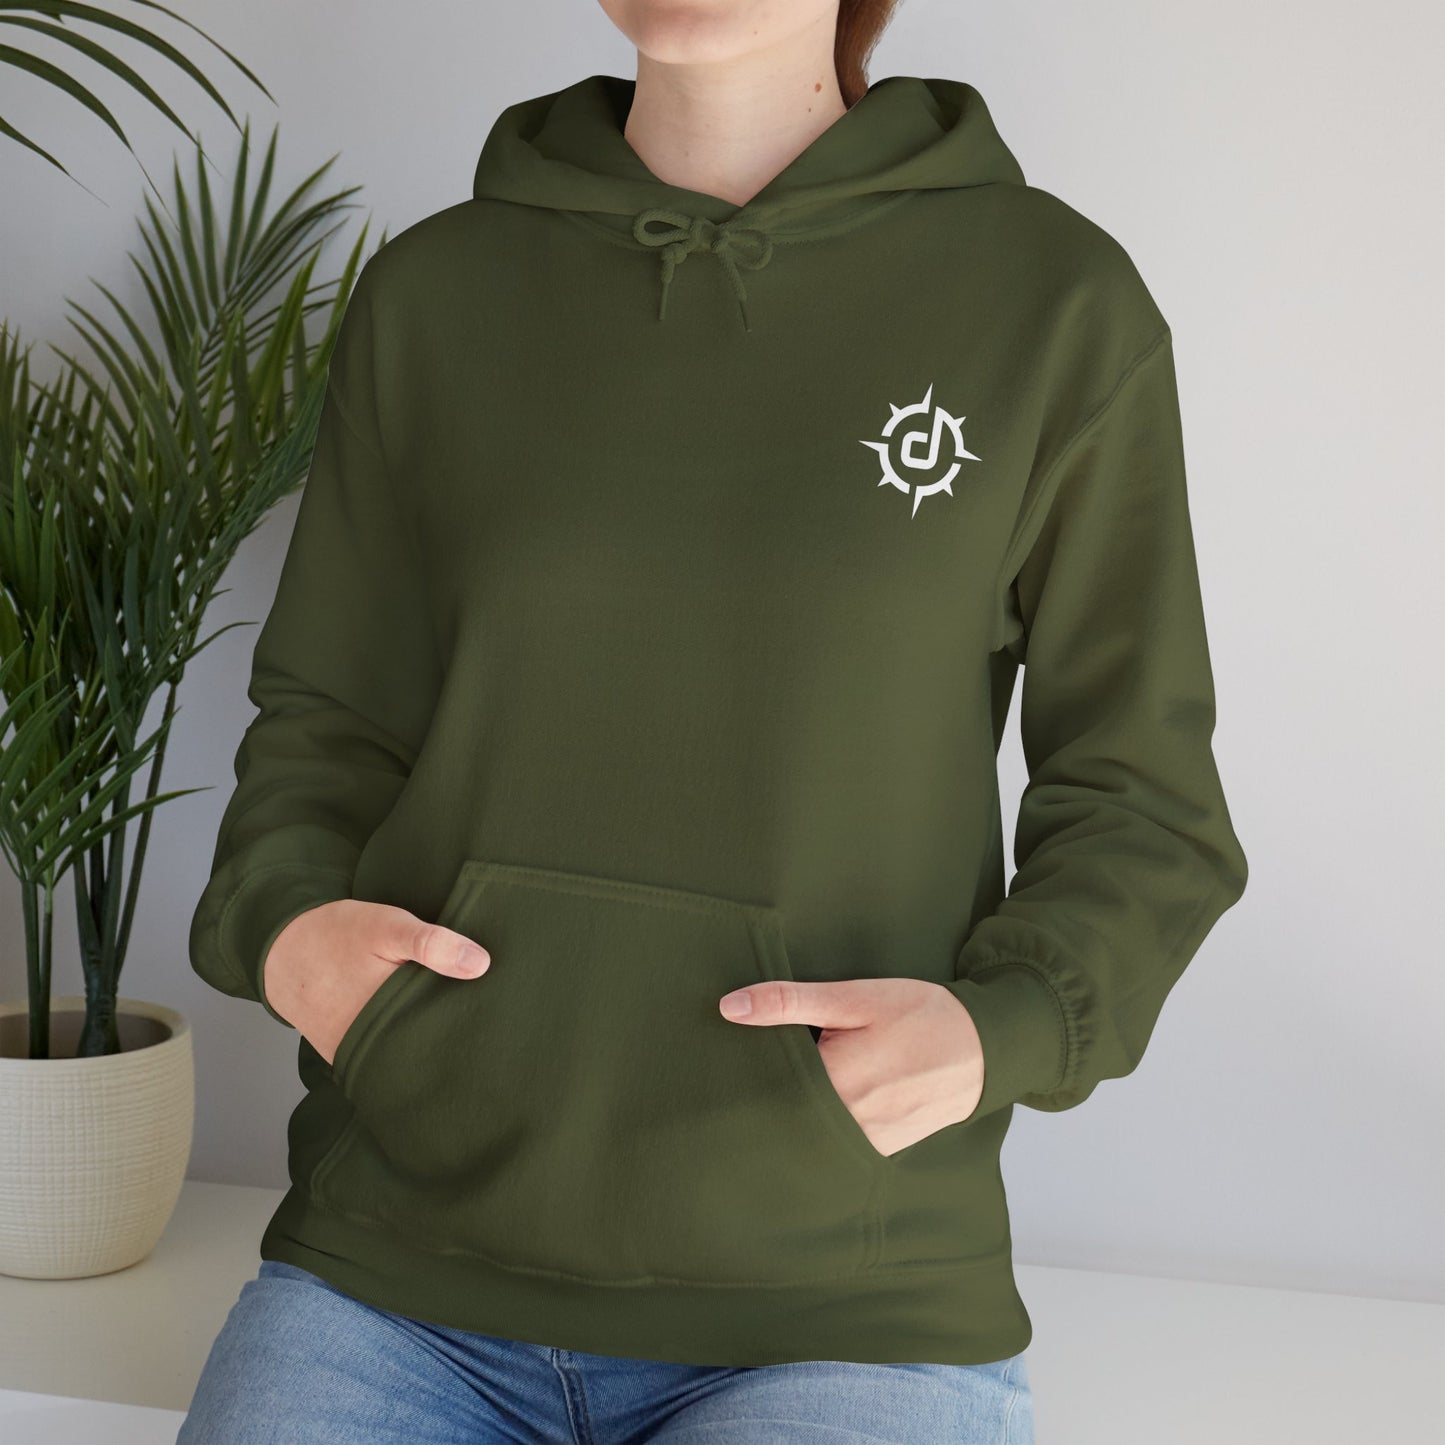 Doneski™ Front/Back Logo Unisex Hooded Sweatshirt